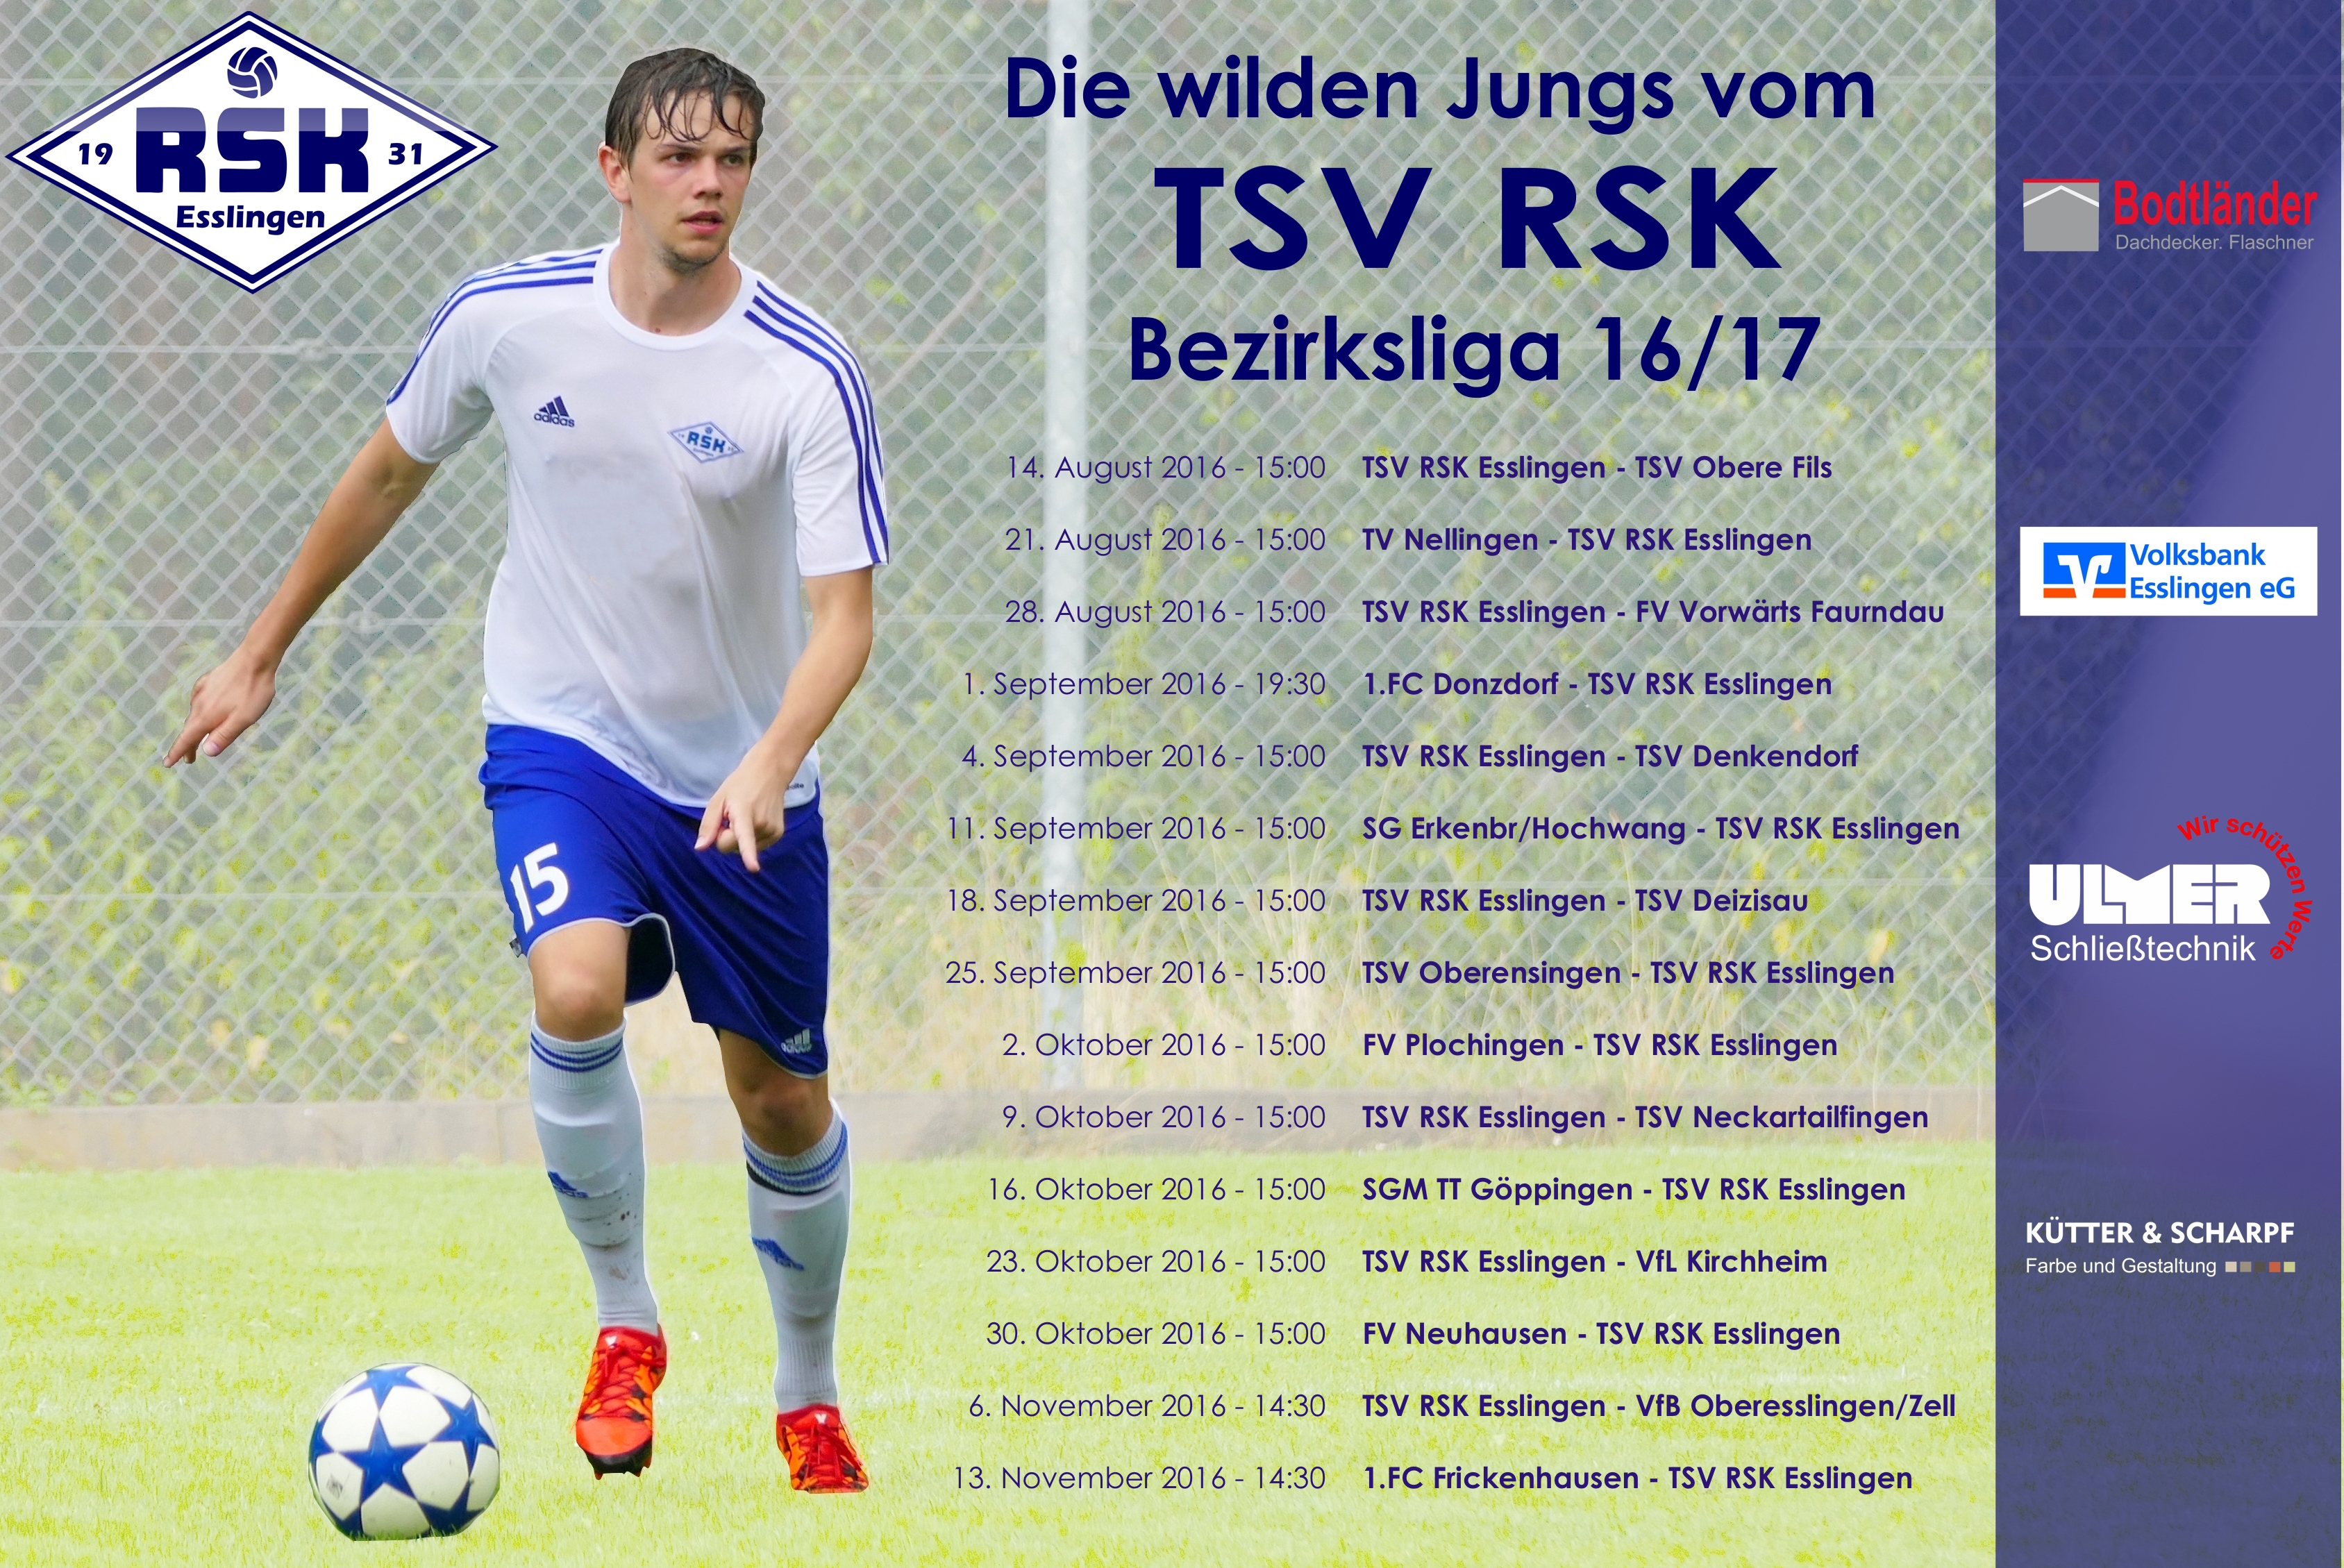 Erik Scherrieble Bezirksliga 2016-17 Plakat